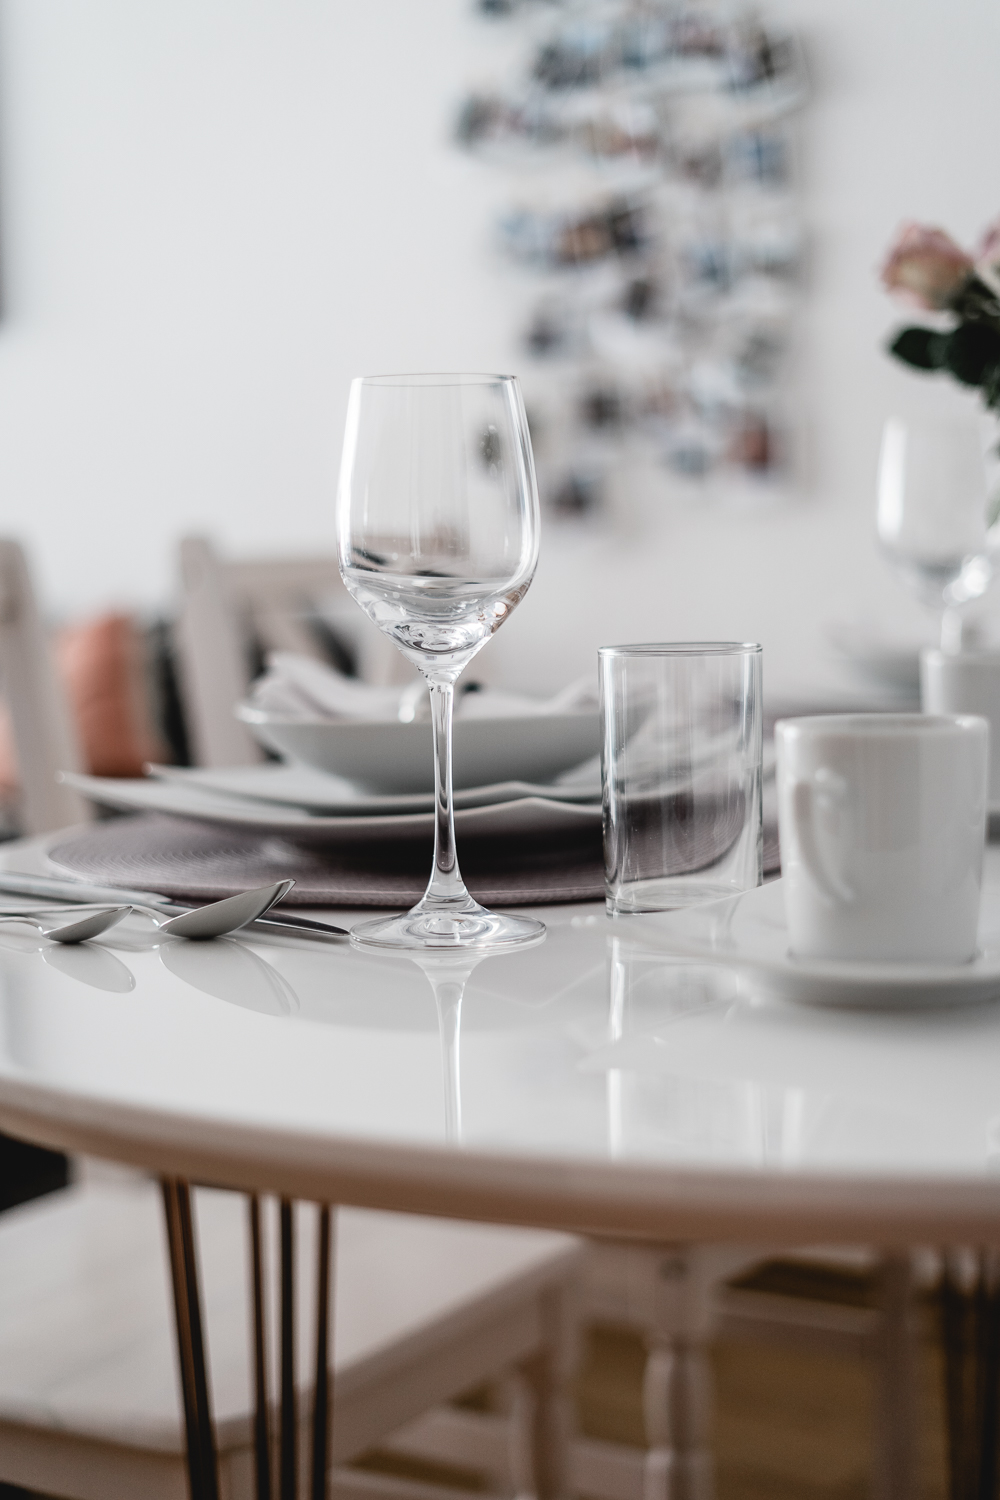 Ideen für schöne Tischdekoration-Tisch richtig eindecken-moderne Tischdeko-Lifestyleblog-andysparkles